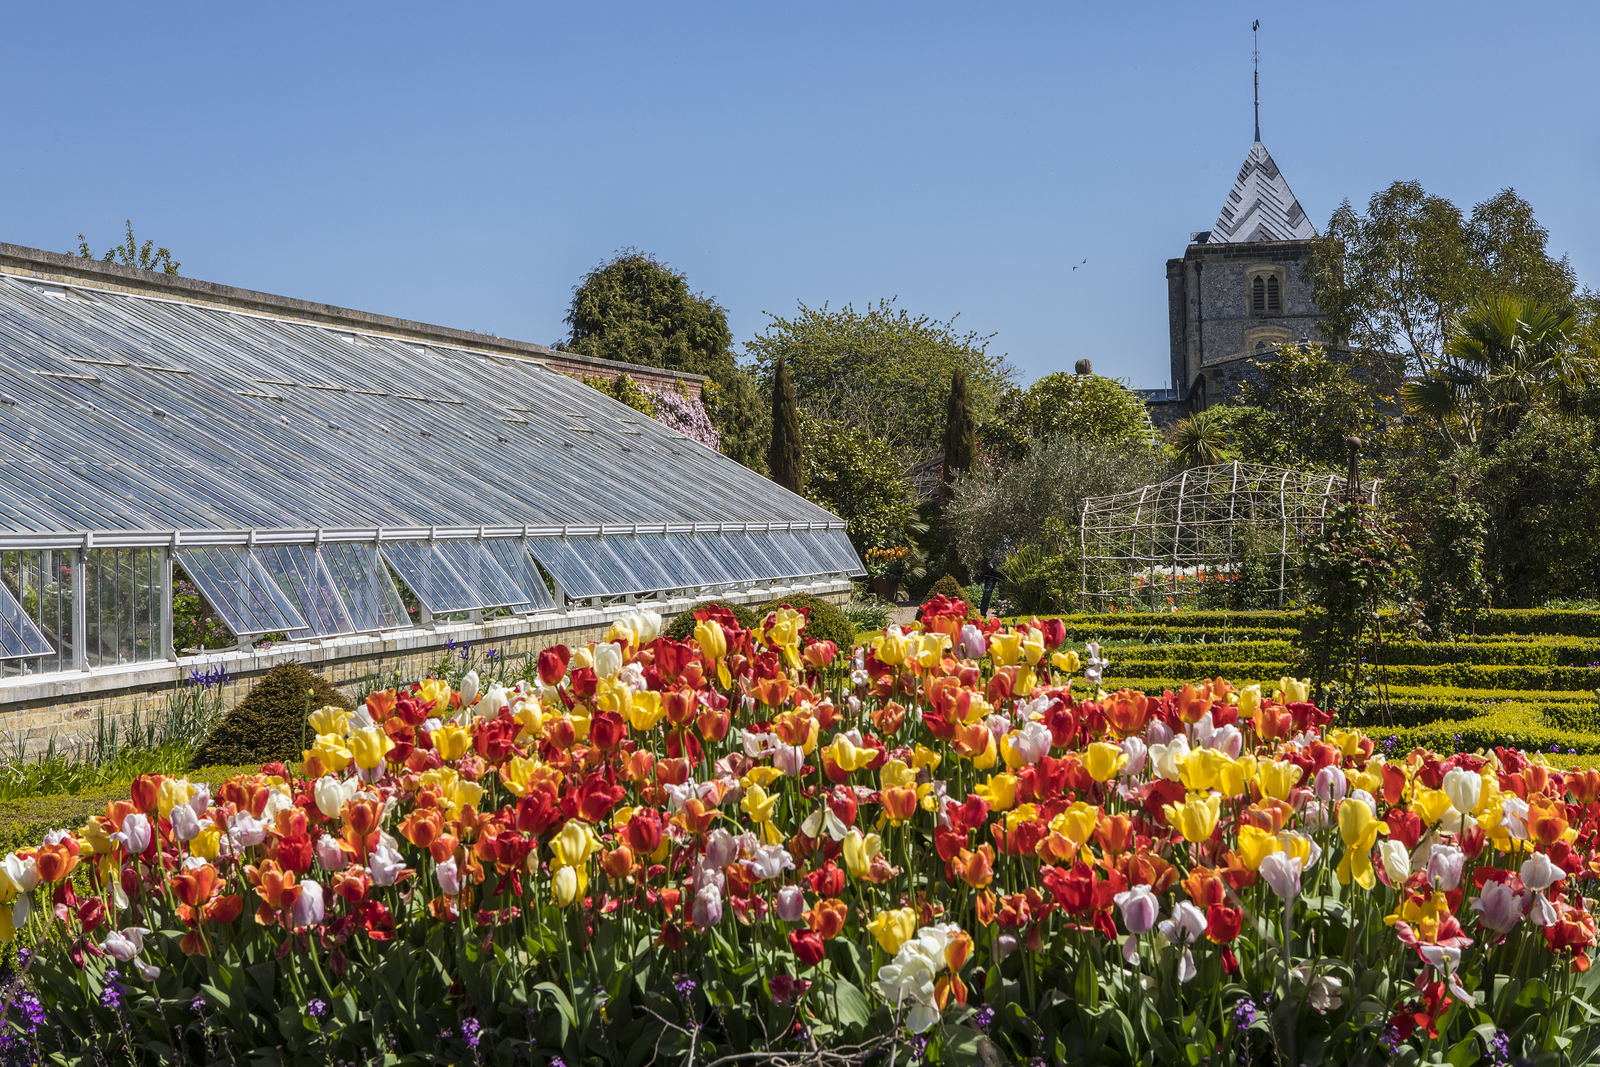 Visit The National Garden Scheme This Spring